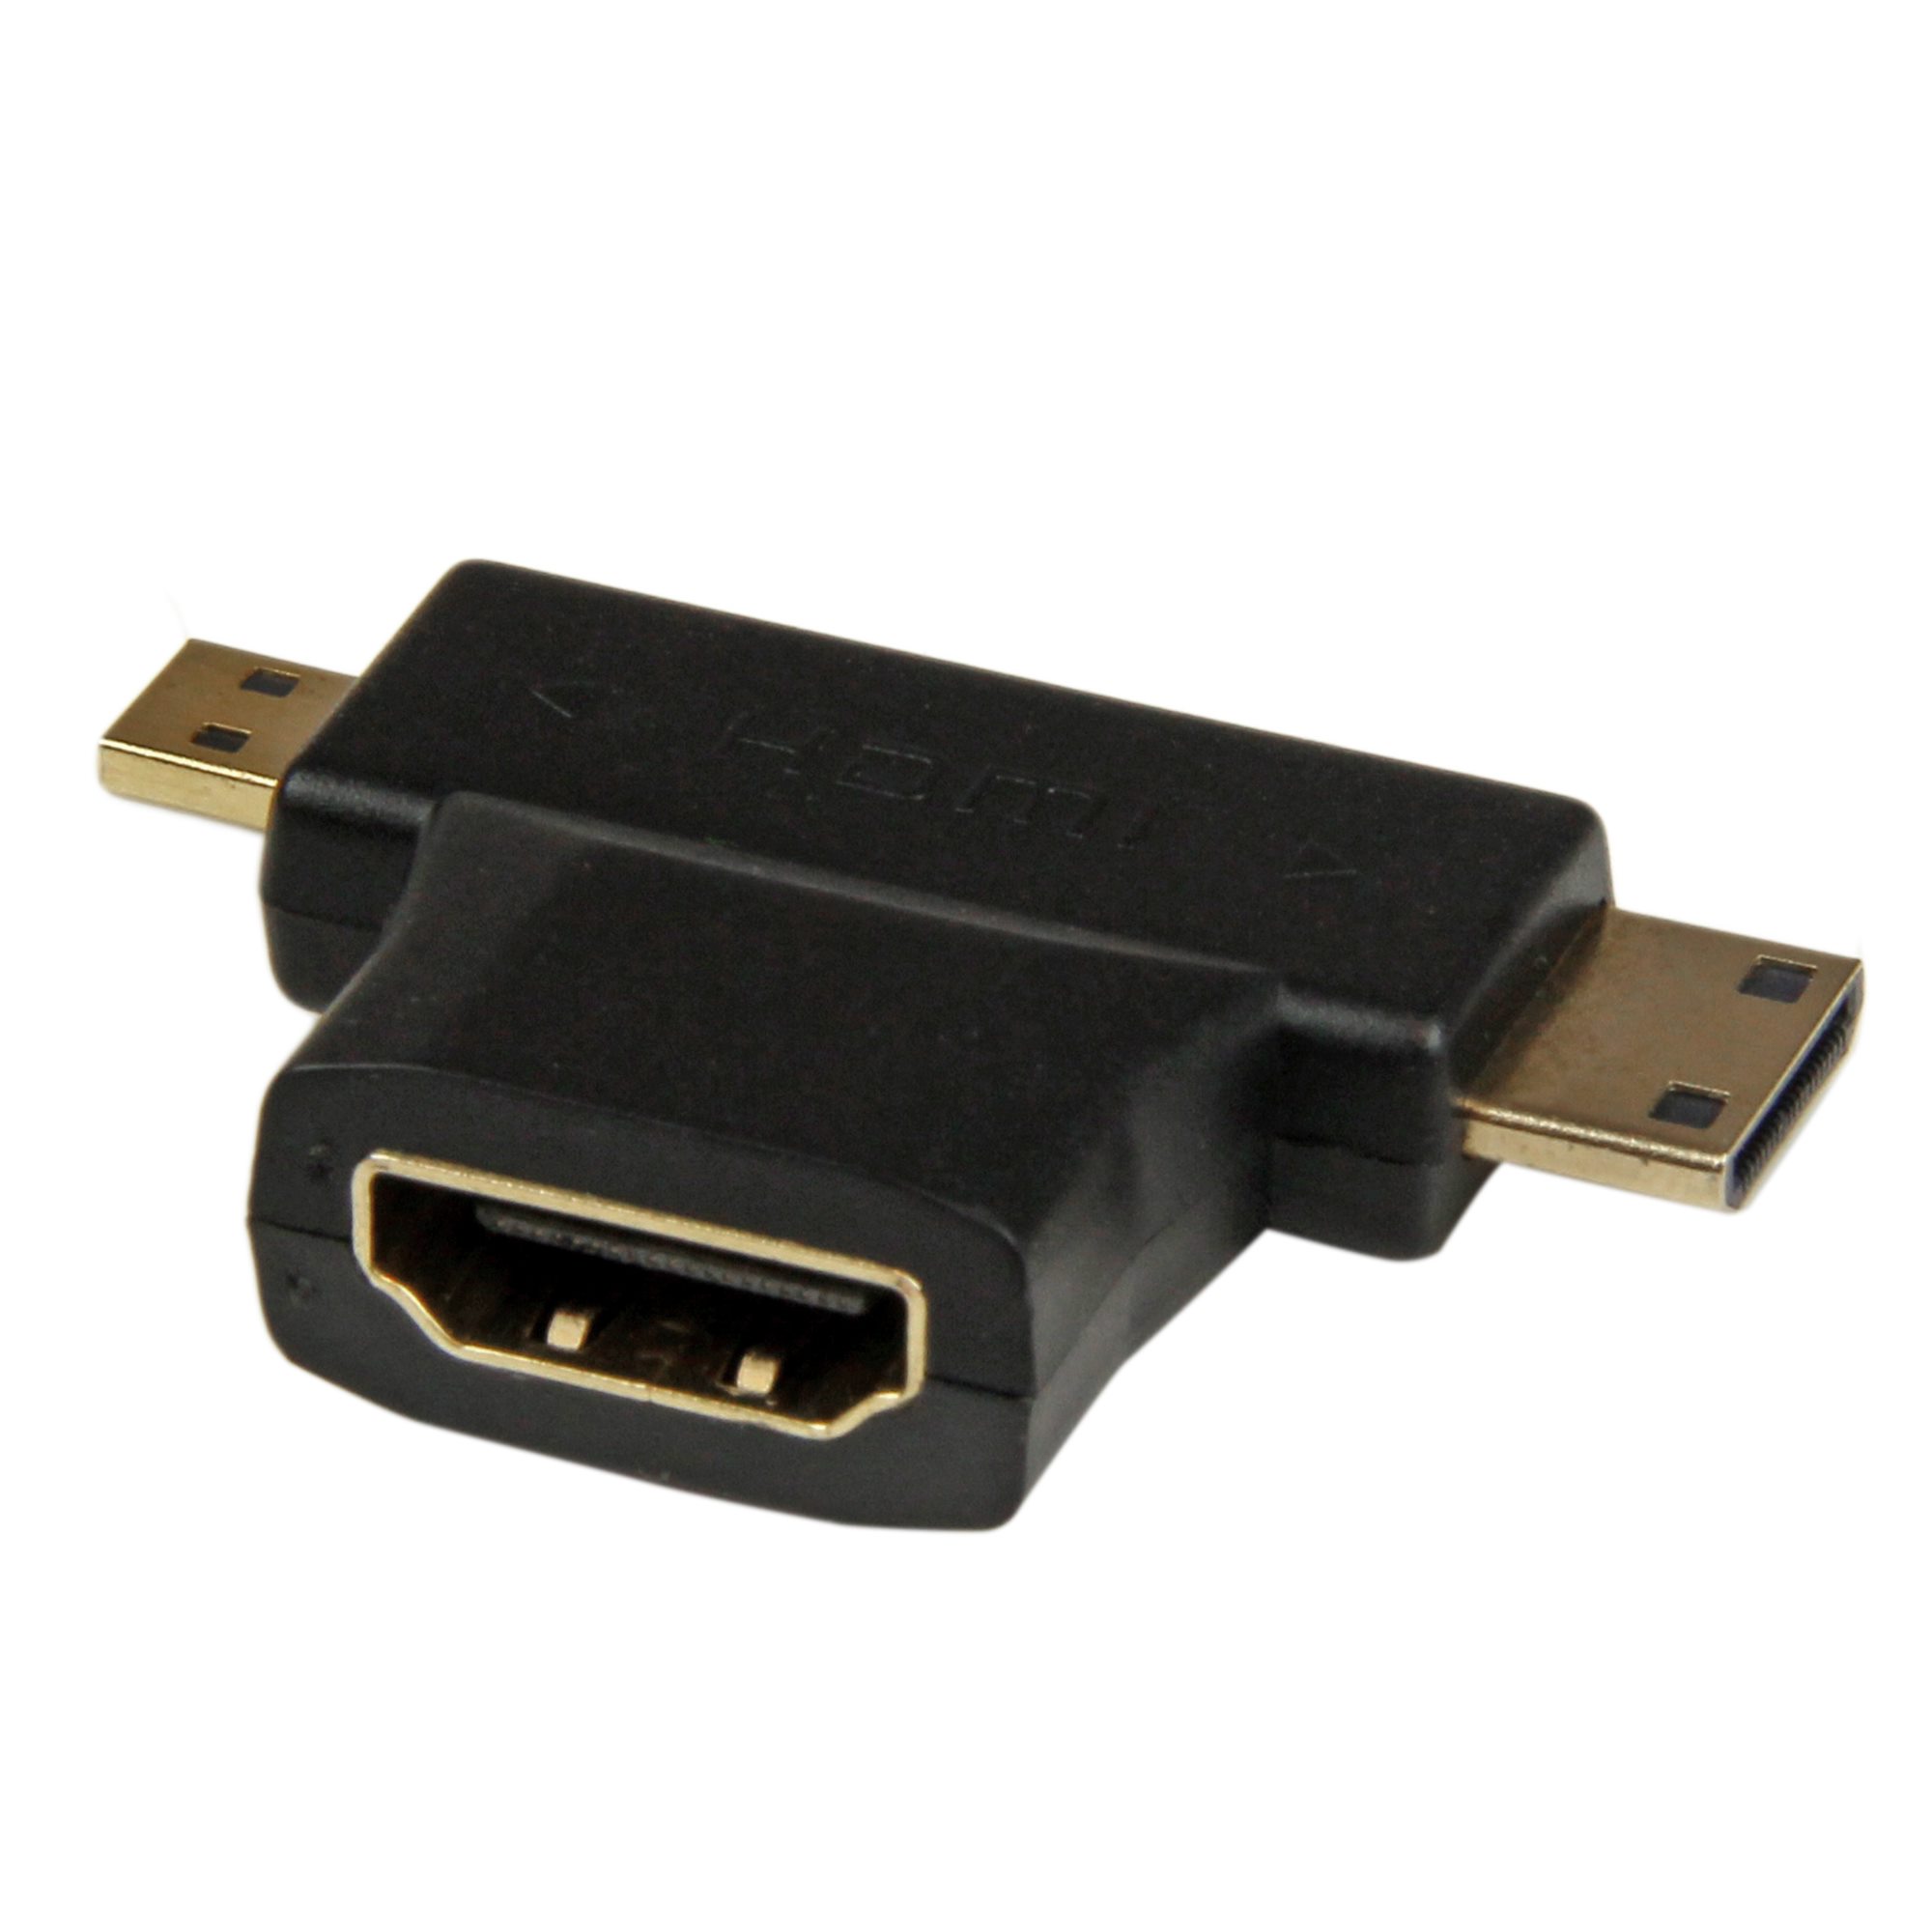 Difuminar Mal humor perfil Adaptador HDMI a Mini HDMI o Micro HDMI - Cables HDMI® y Adaptadores HDMI |  España